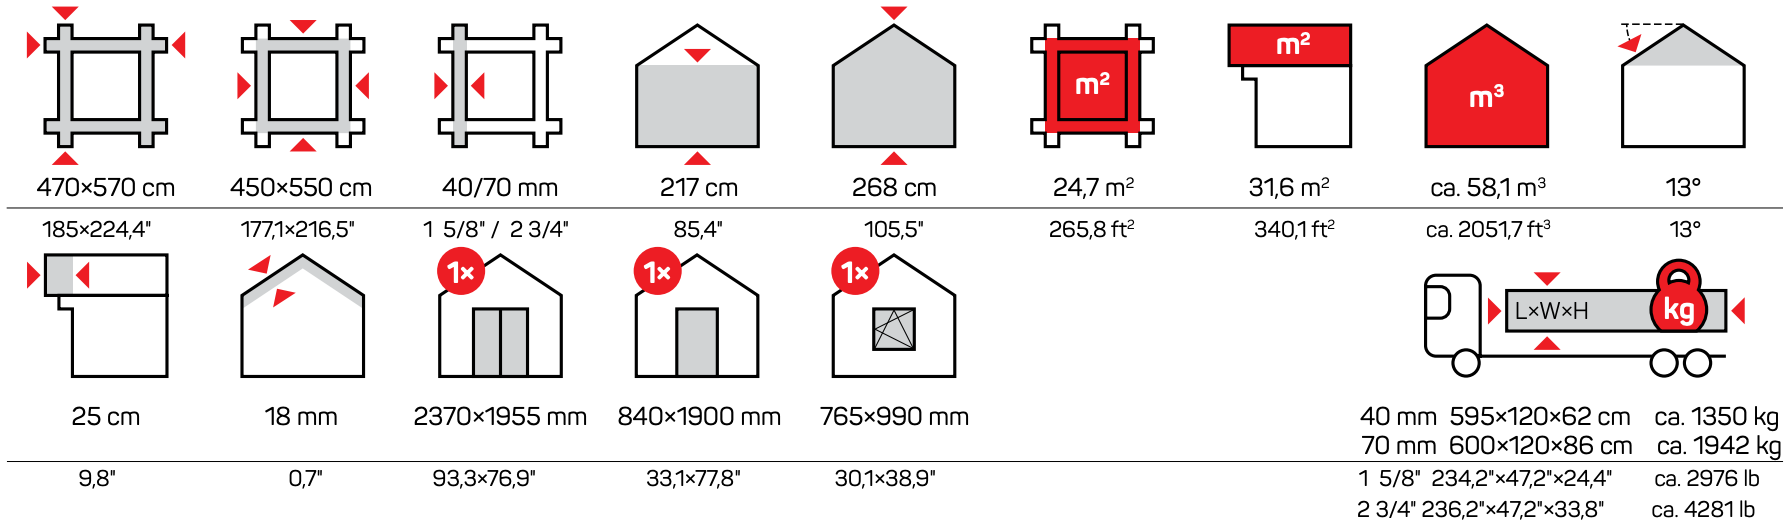 Icons Measurements Ibi Garage B Garages